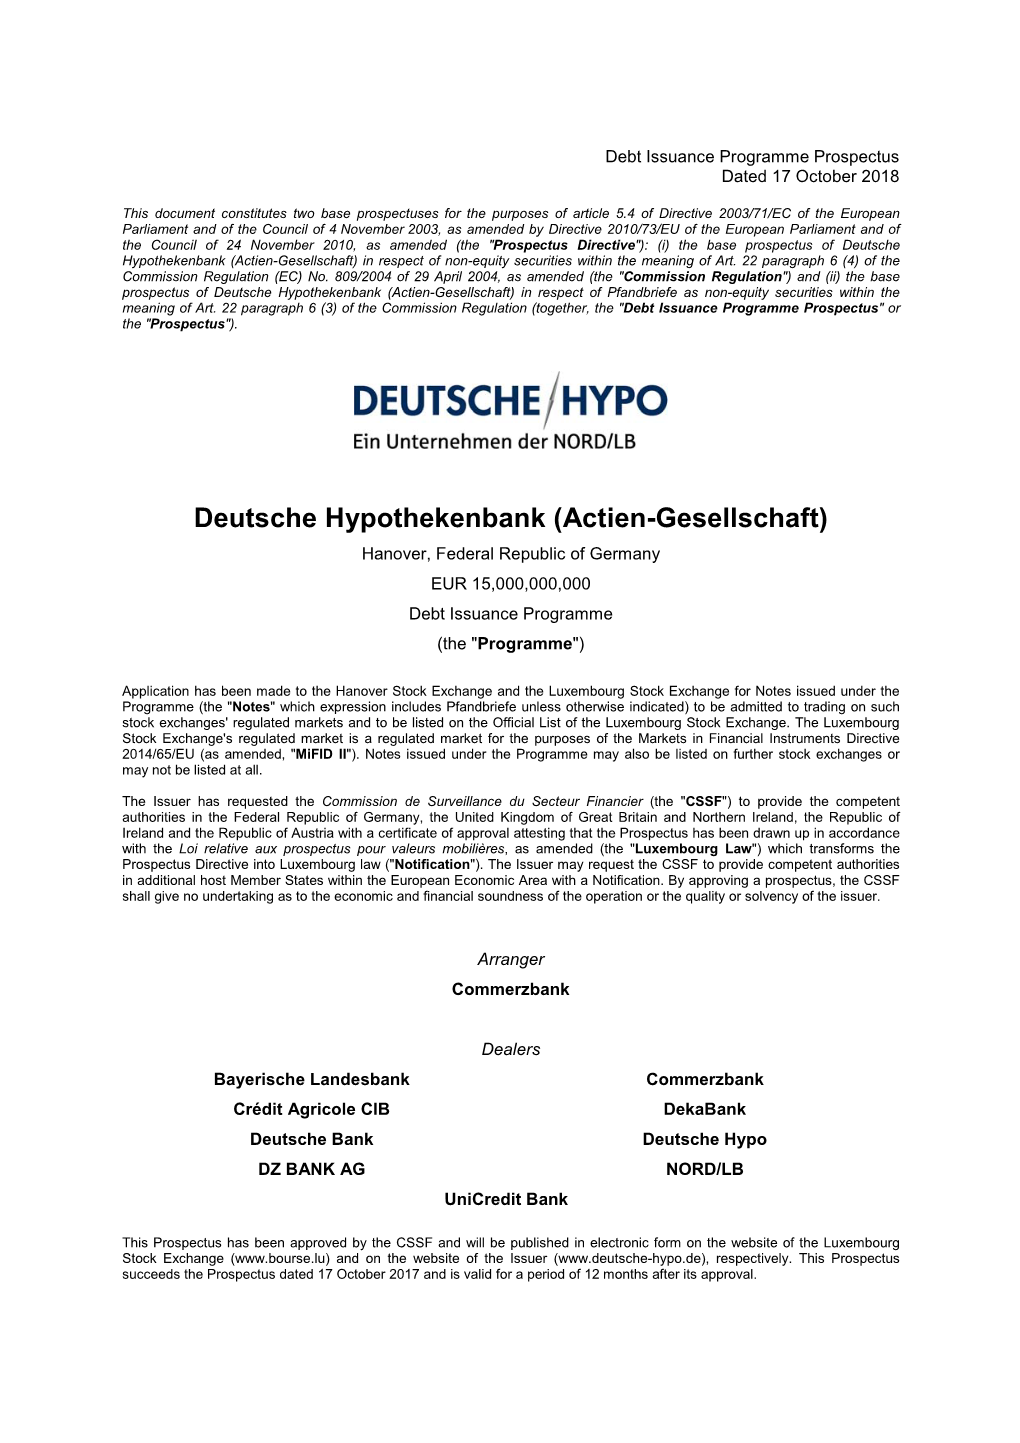 Deutsche Hypothekenbank (Actien-Gesellschaft) in Respect of Non-Equity Securities Within the Meaning of Art